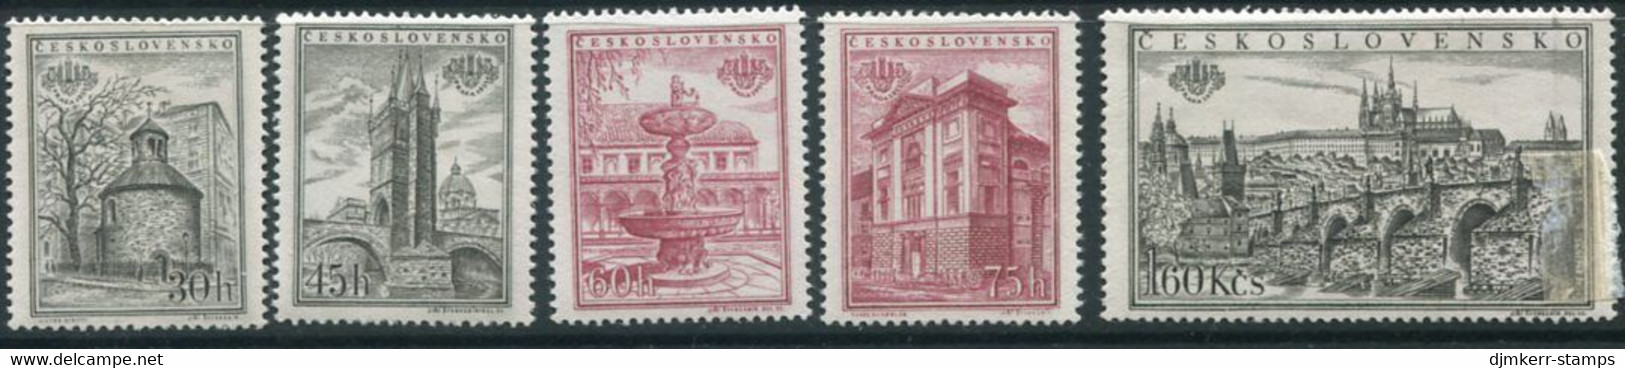 CZECHOSLOVAKIA 1955 Praga 1955 Stamp Exhibition Perforated Singles Ex Block MNH / **.  Michel 934-38A - Ungebraucht